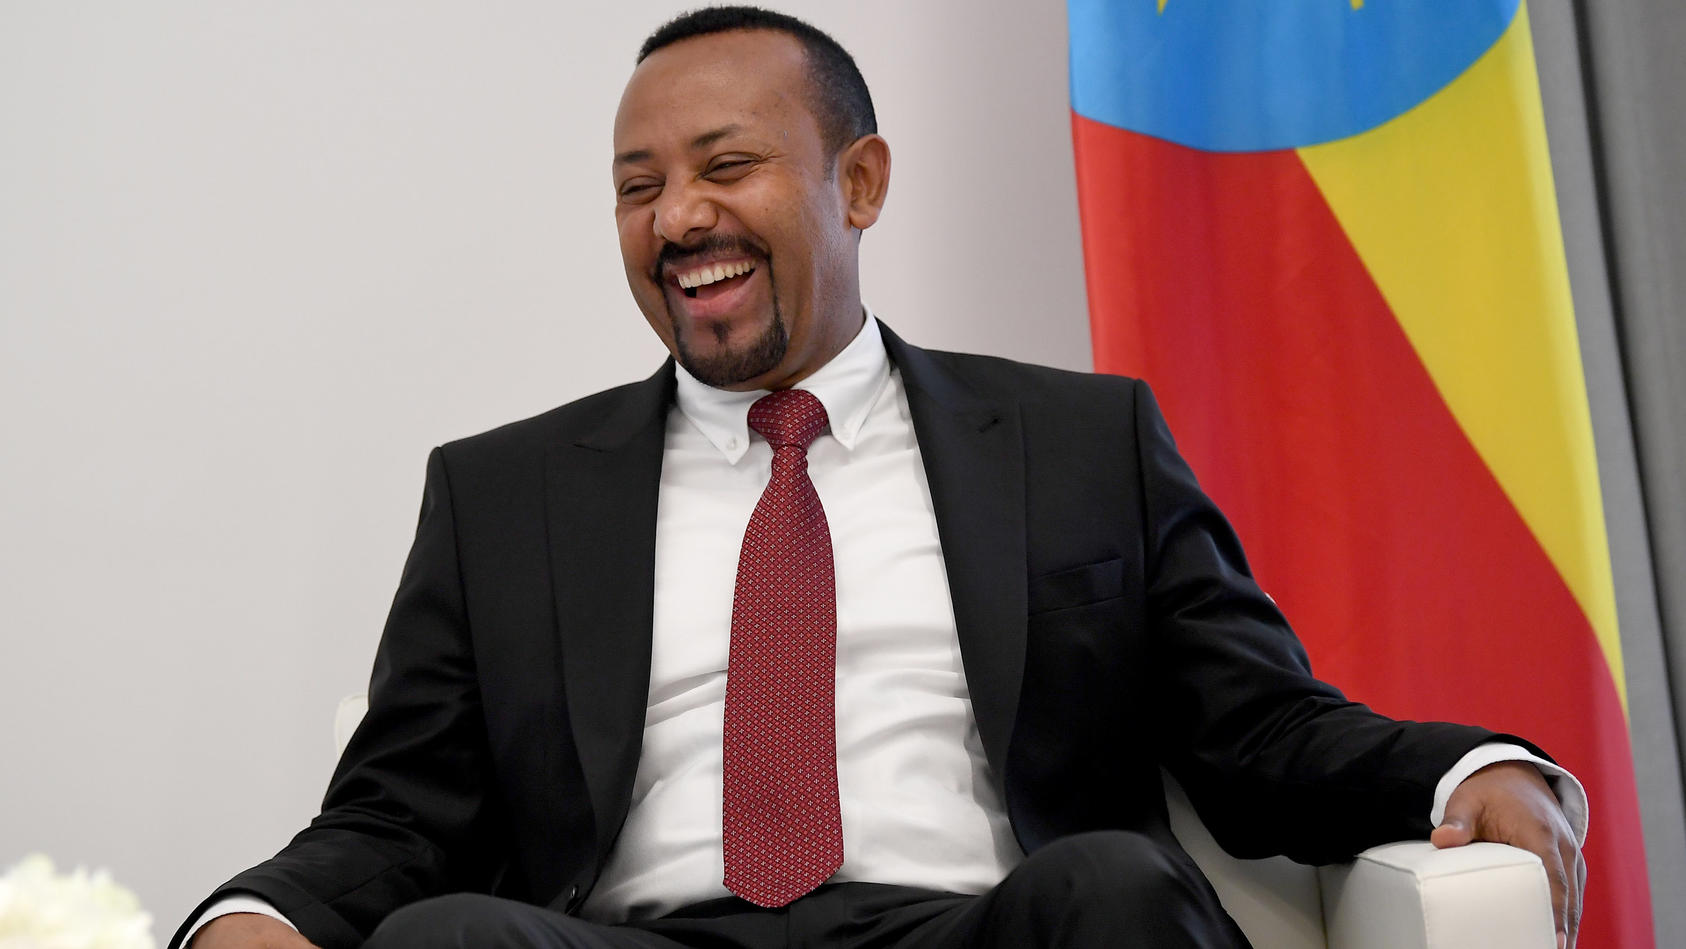 ARCHIV - 28.01.2019, Äthiopien, Addis Abeba: Abiy Ahmed, Ministerpräsident von Äthiopien. Ahmed. In Oslo wird am Freitag (04. Oktober) der Name des diesjährigen Friedensnobelpreisträgers enthüllt. Der Preis gilt als die renommierteste politische Ausz